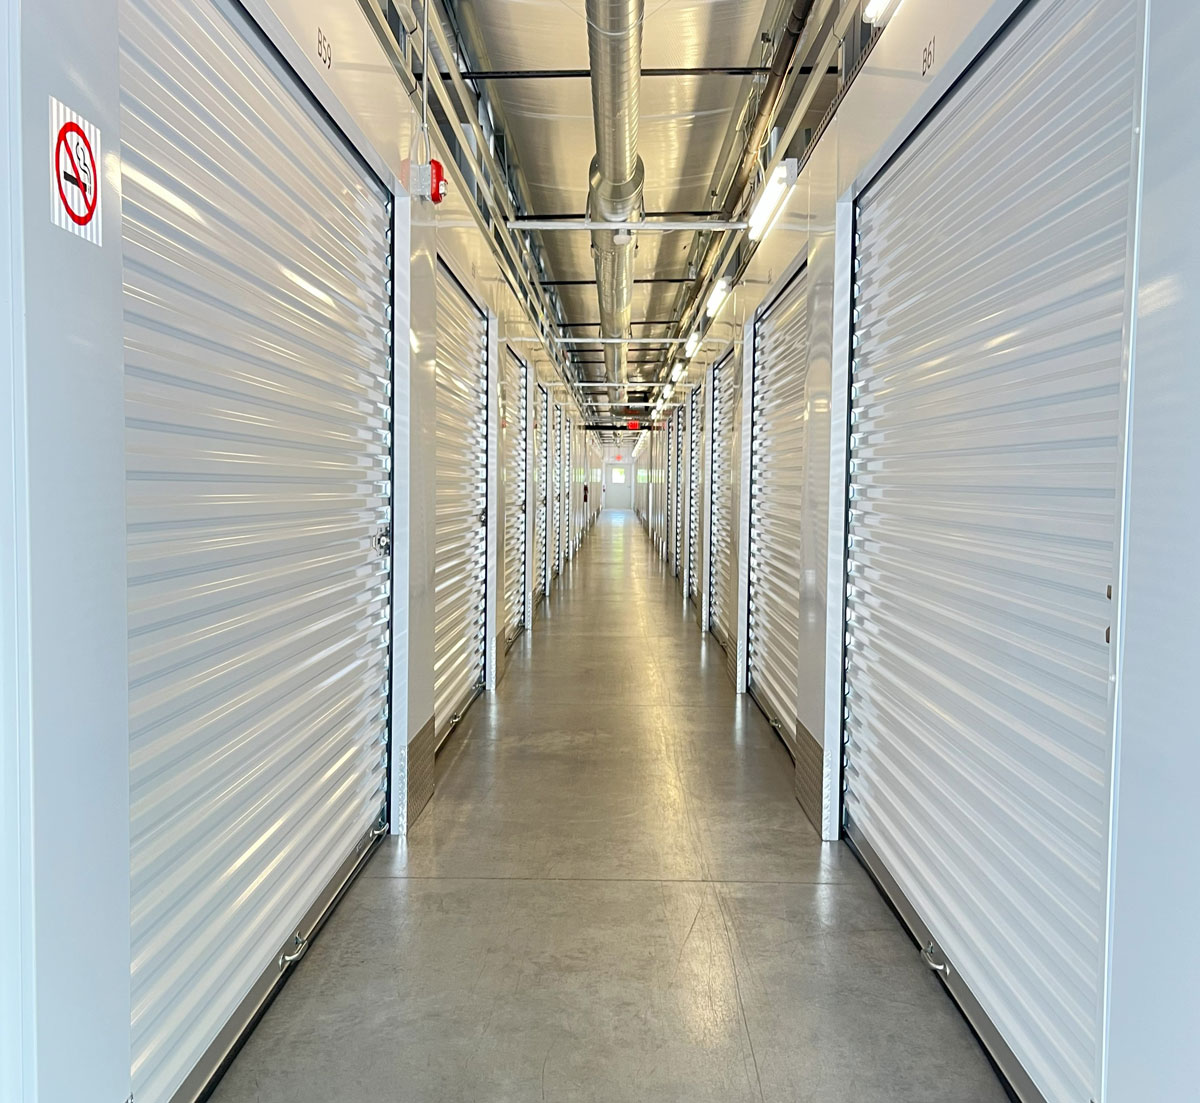 hallway with storage units